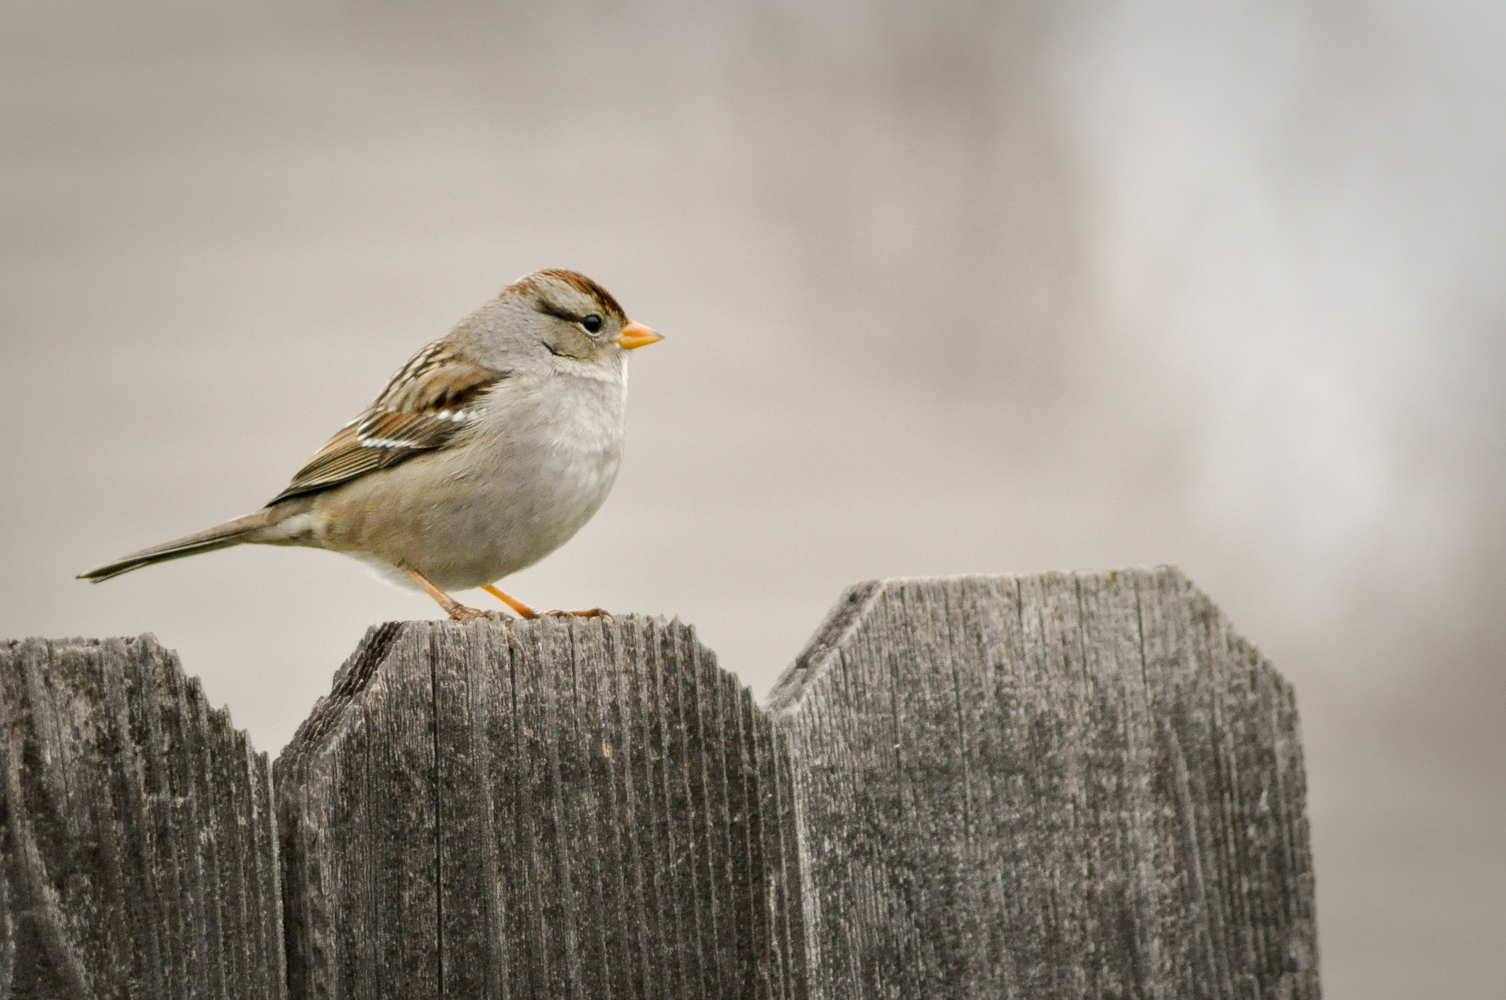 A bird on a fence